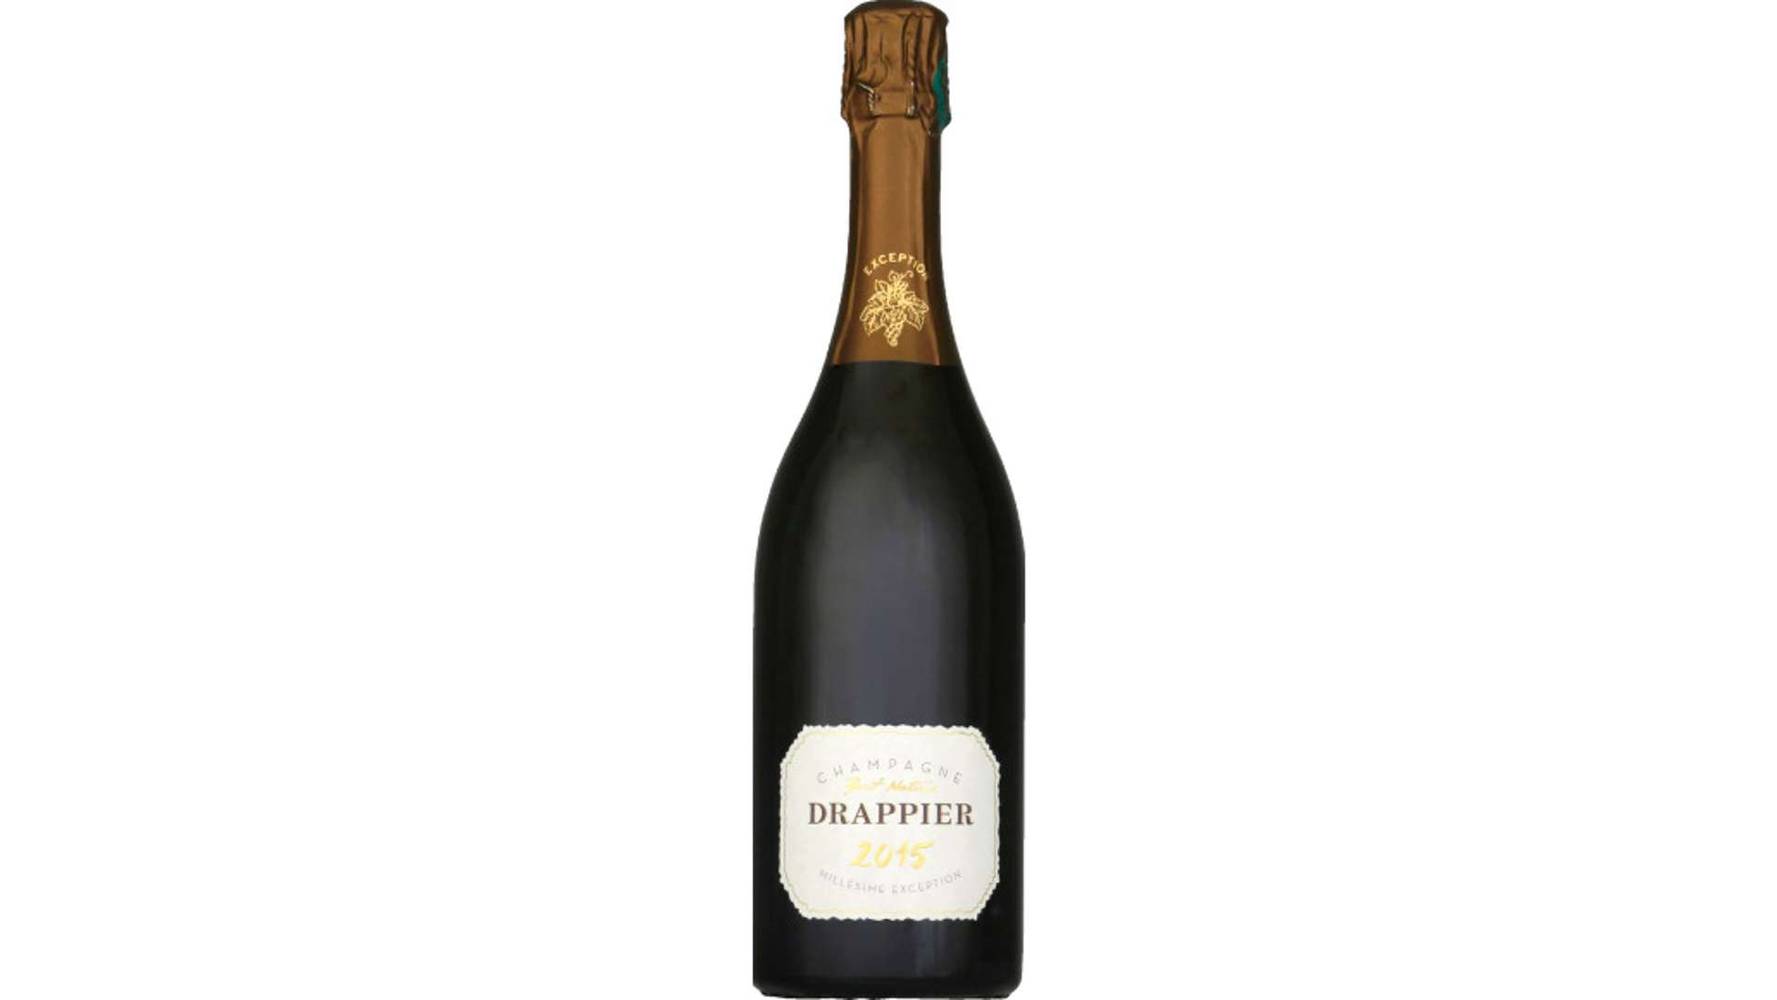 Drappier Champagne AOP, Brut La bouteille de 75cl avec etui